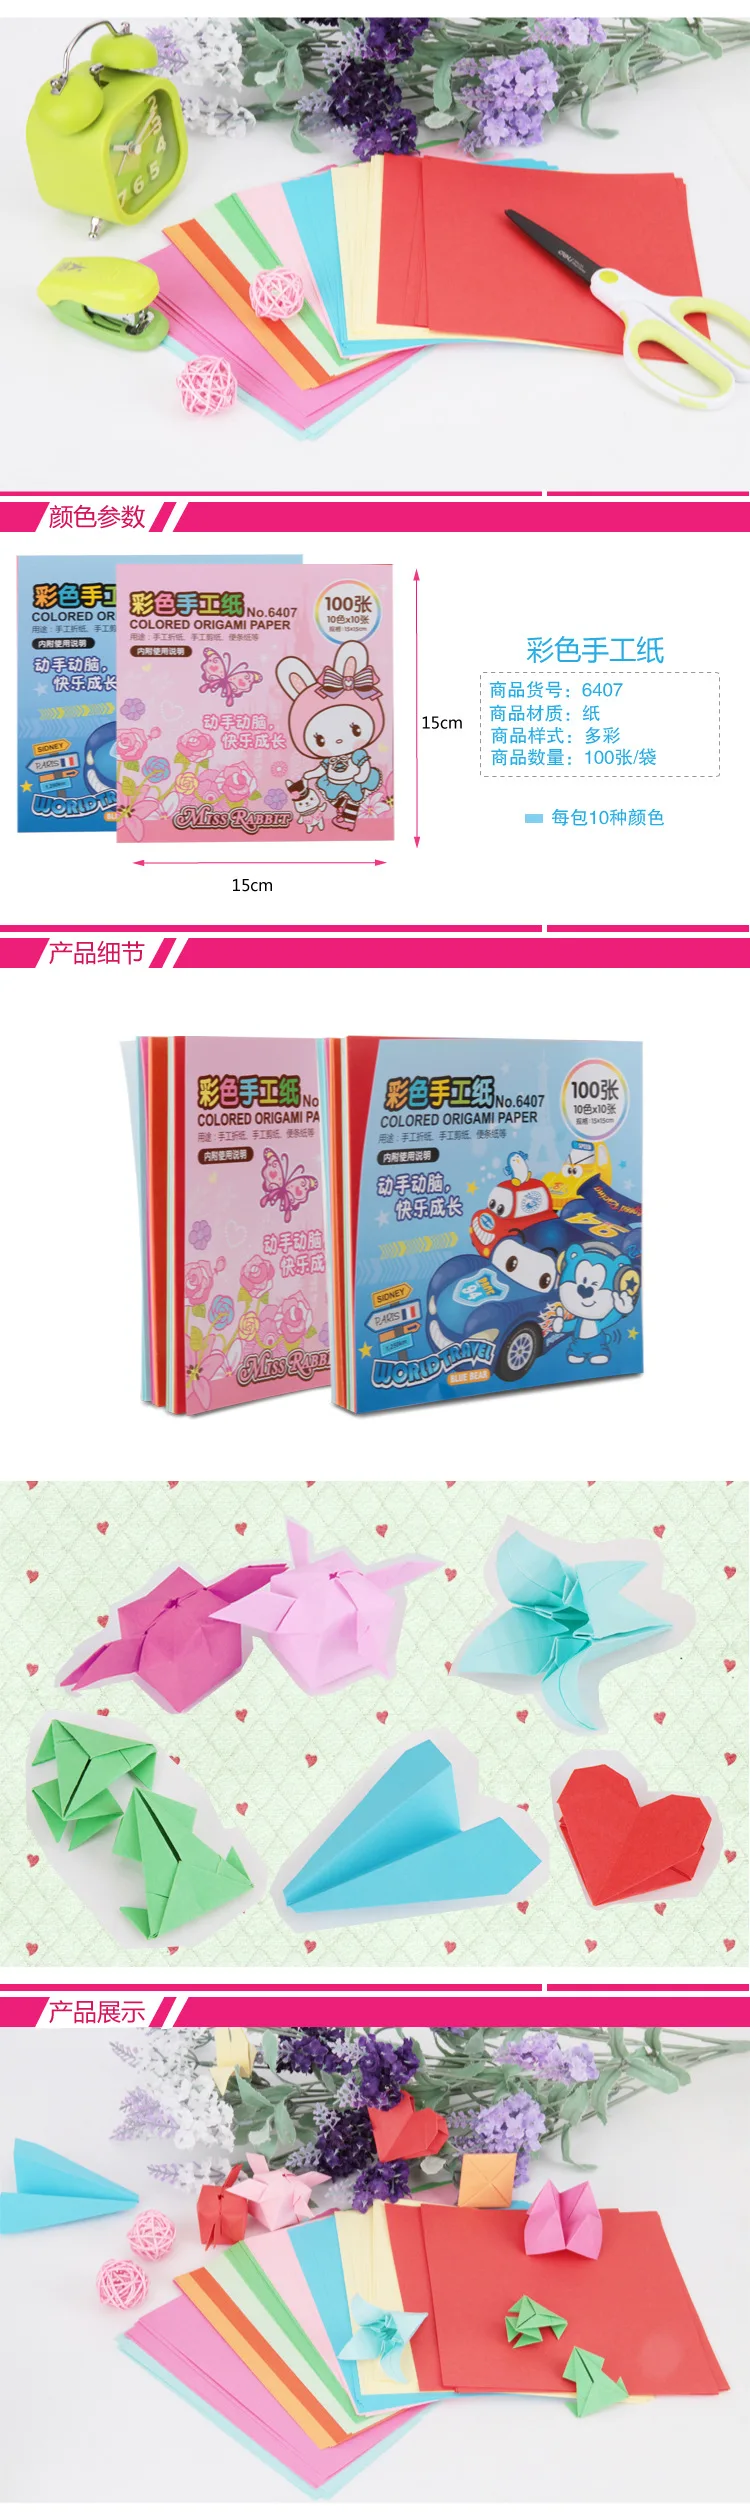 6407 цветная оригами для ручной работы, бумага для детской ручной работы, 15*15 см, 100 страница/упаковка, товары для классных комнат